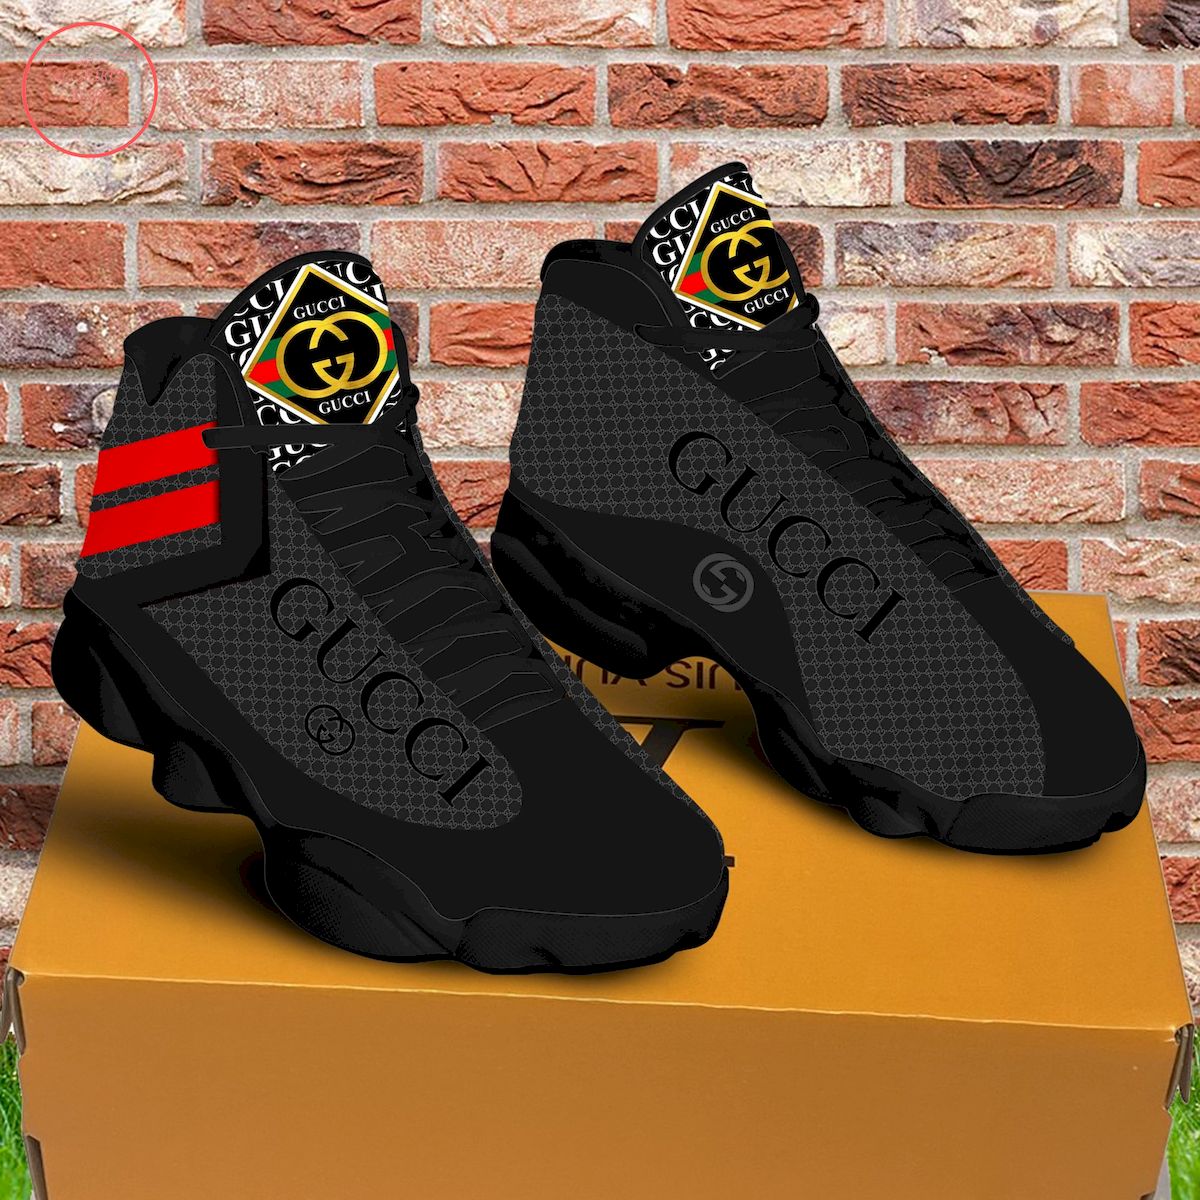 Gucci Black Air Jordan 13 Sneakers Shoes